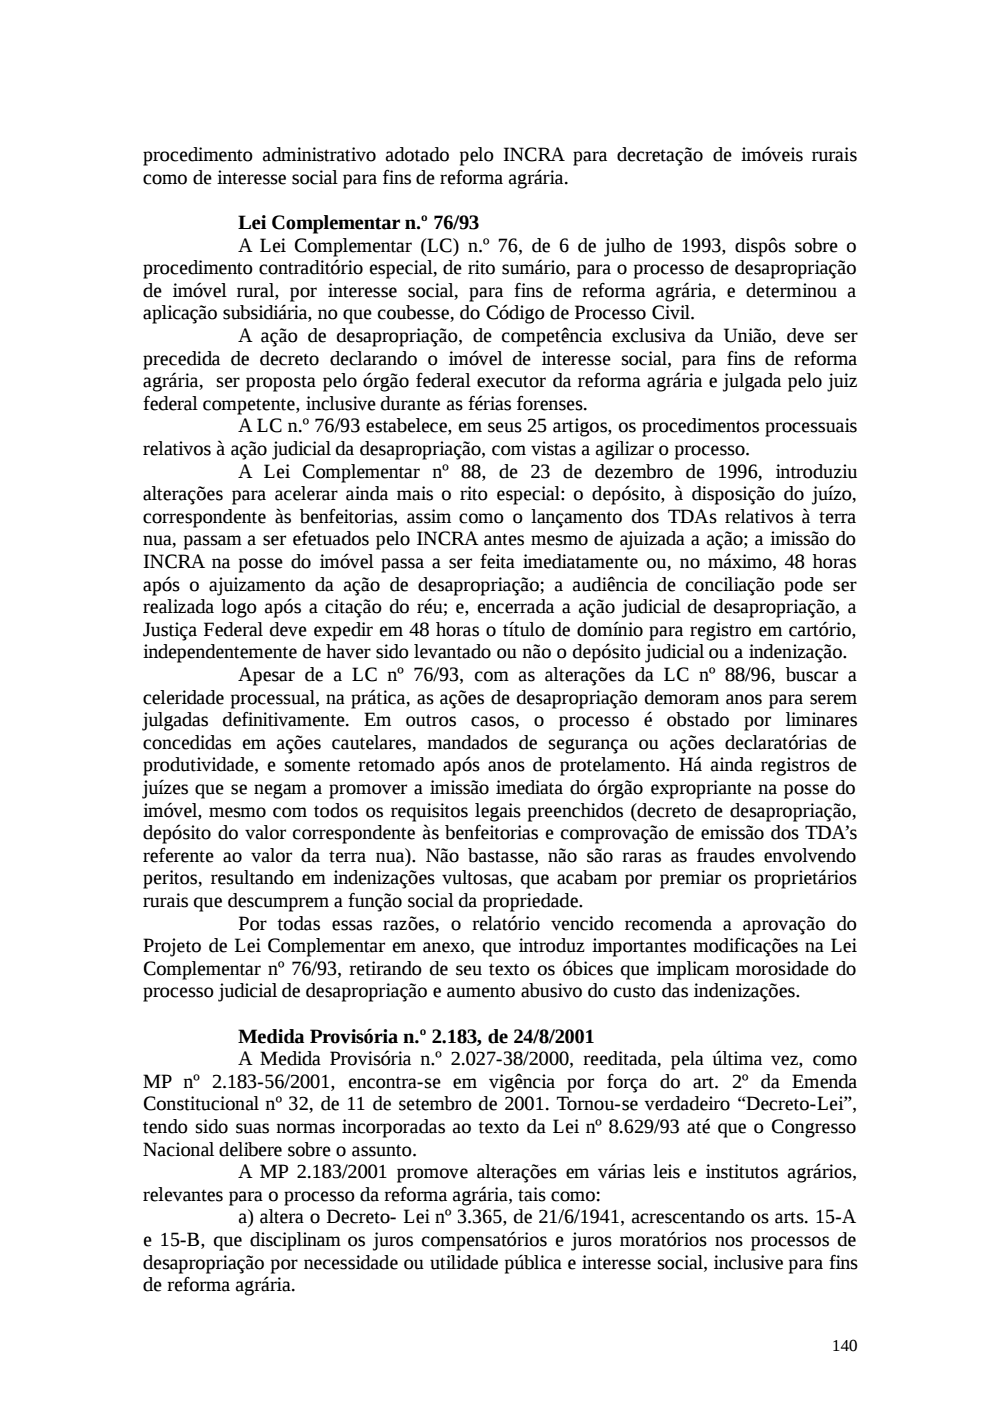 Page 140 from Relatório final da comissão